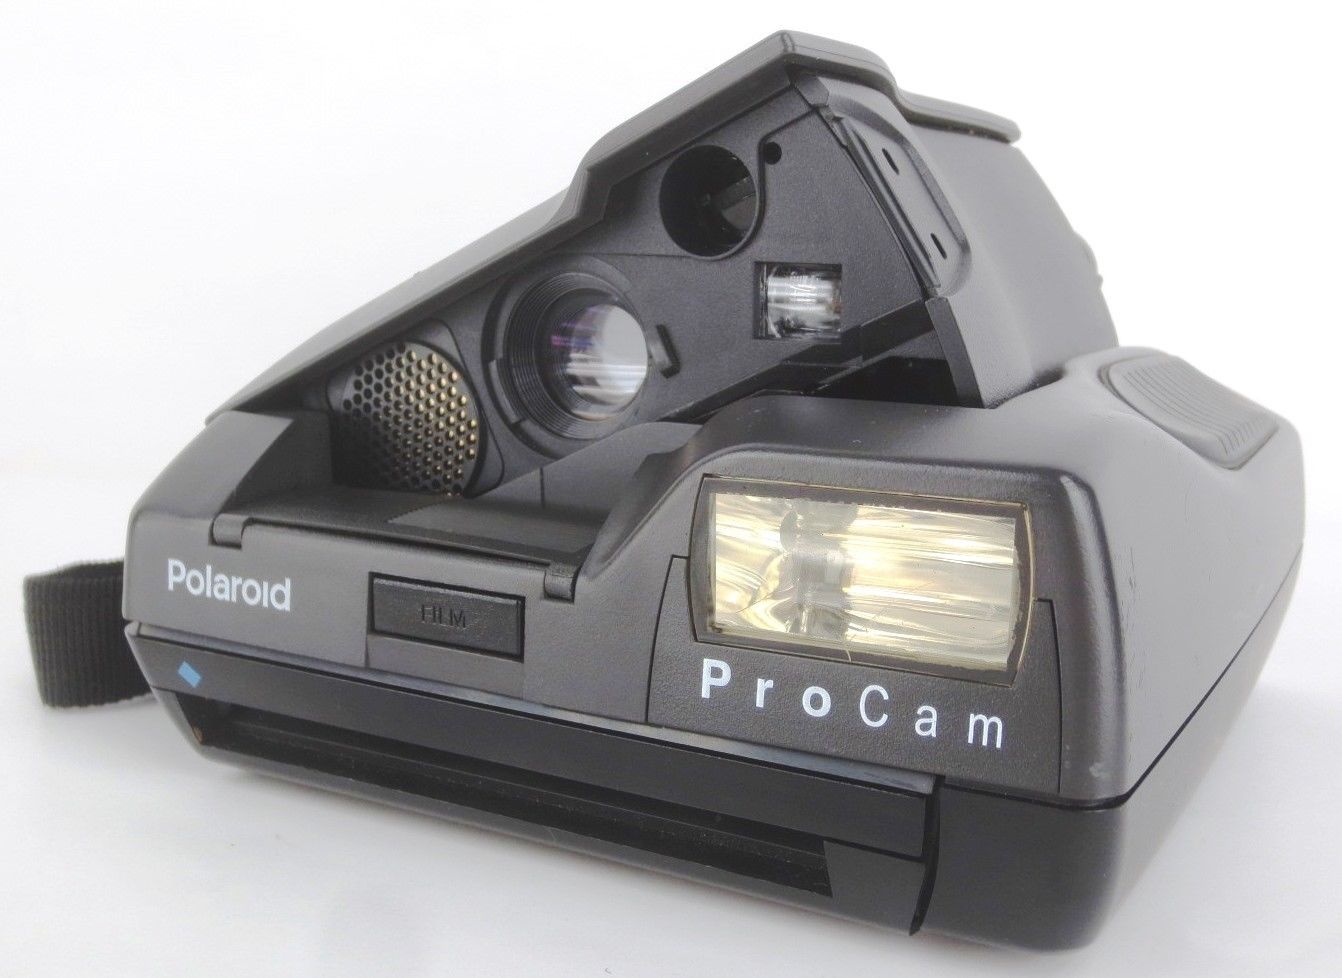 polaroid-procam-instant-film-camera-w-manual-used-film-cartridge-010-591741-6b20af4c5649c231b7cf647b65882b47.jpg